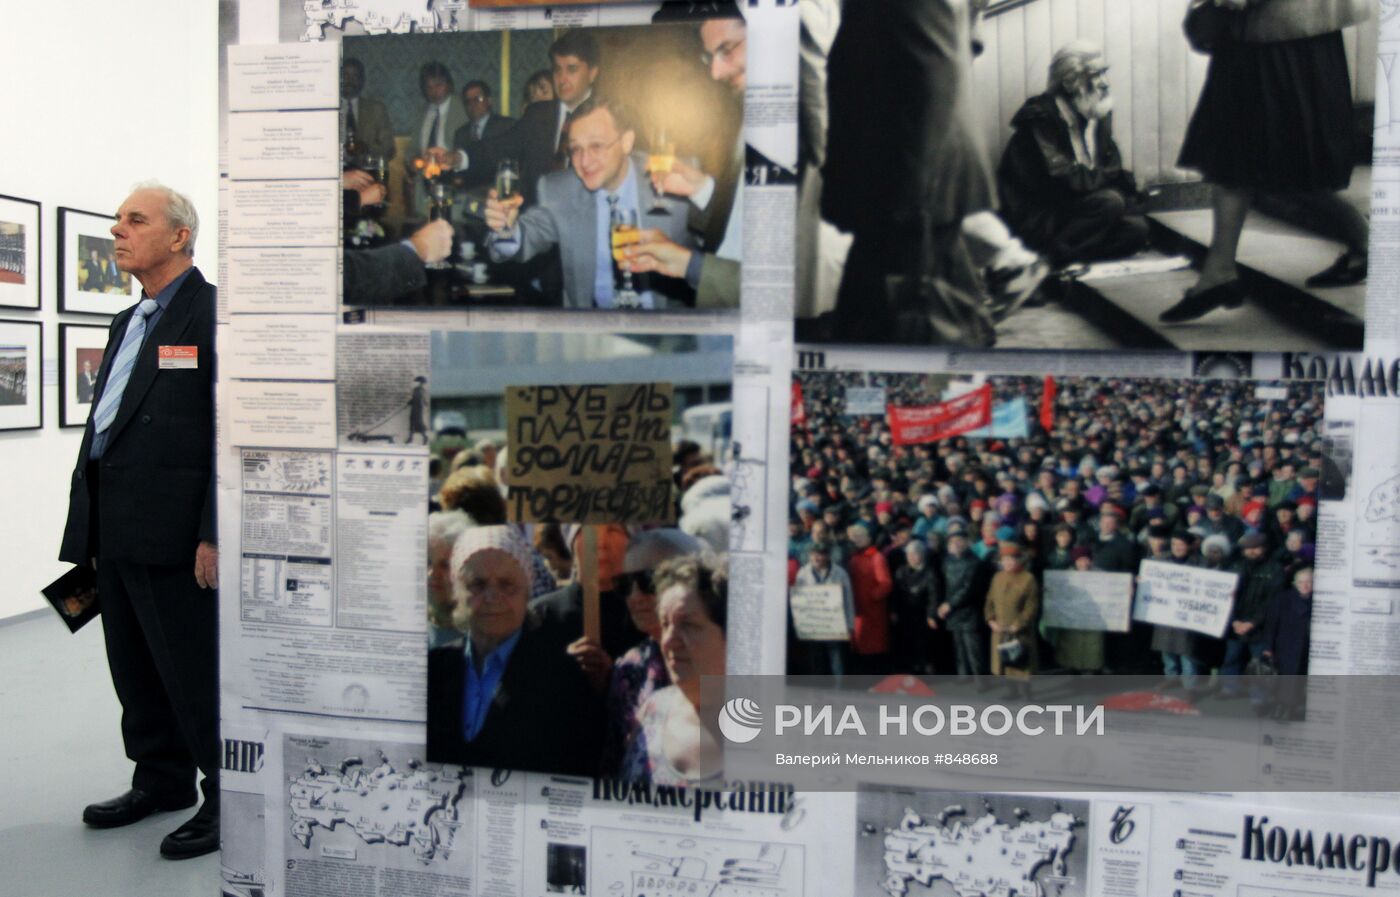 Открытие выставки "Борис Ельцин и его время"